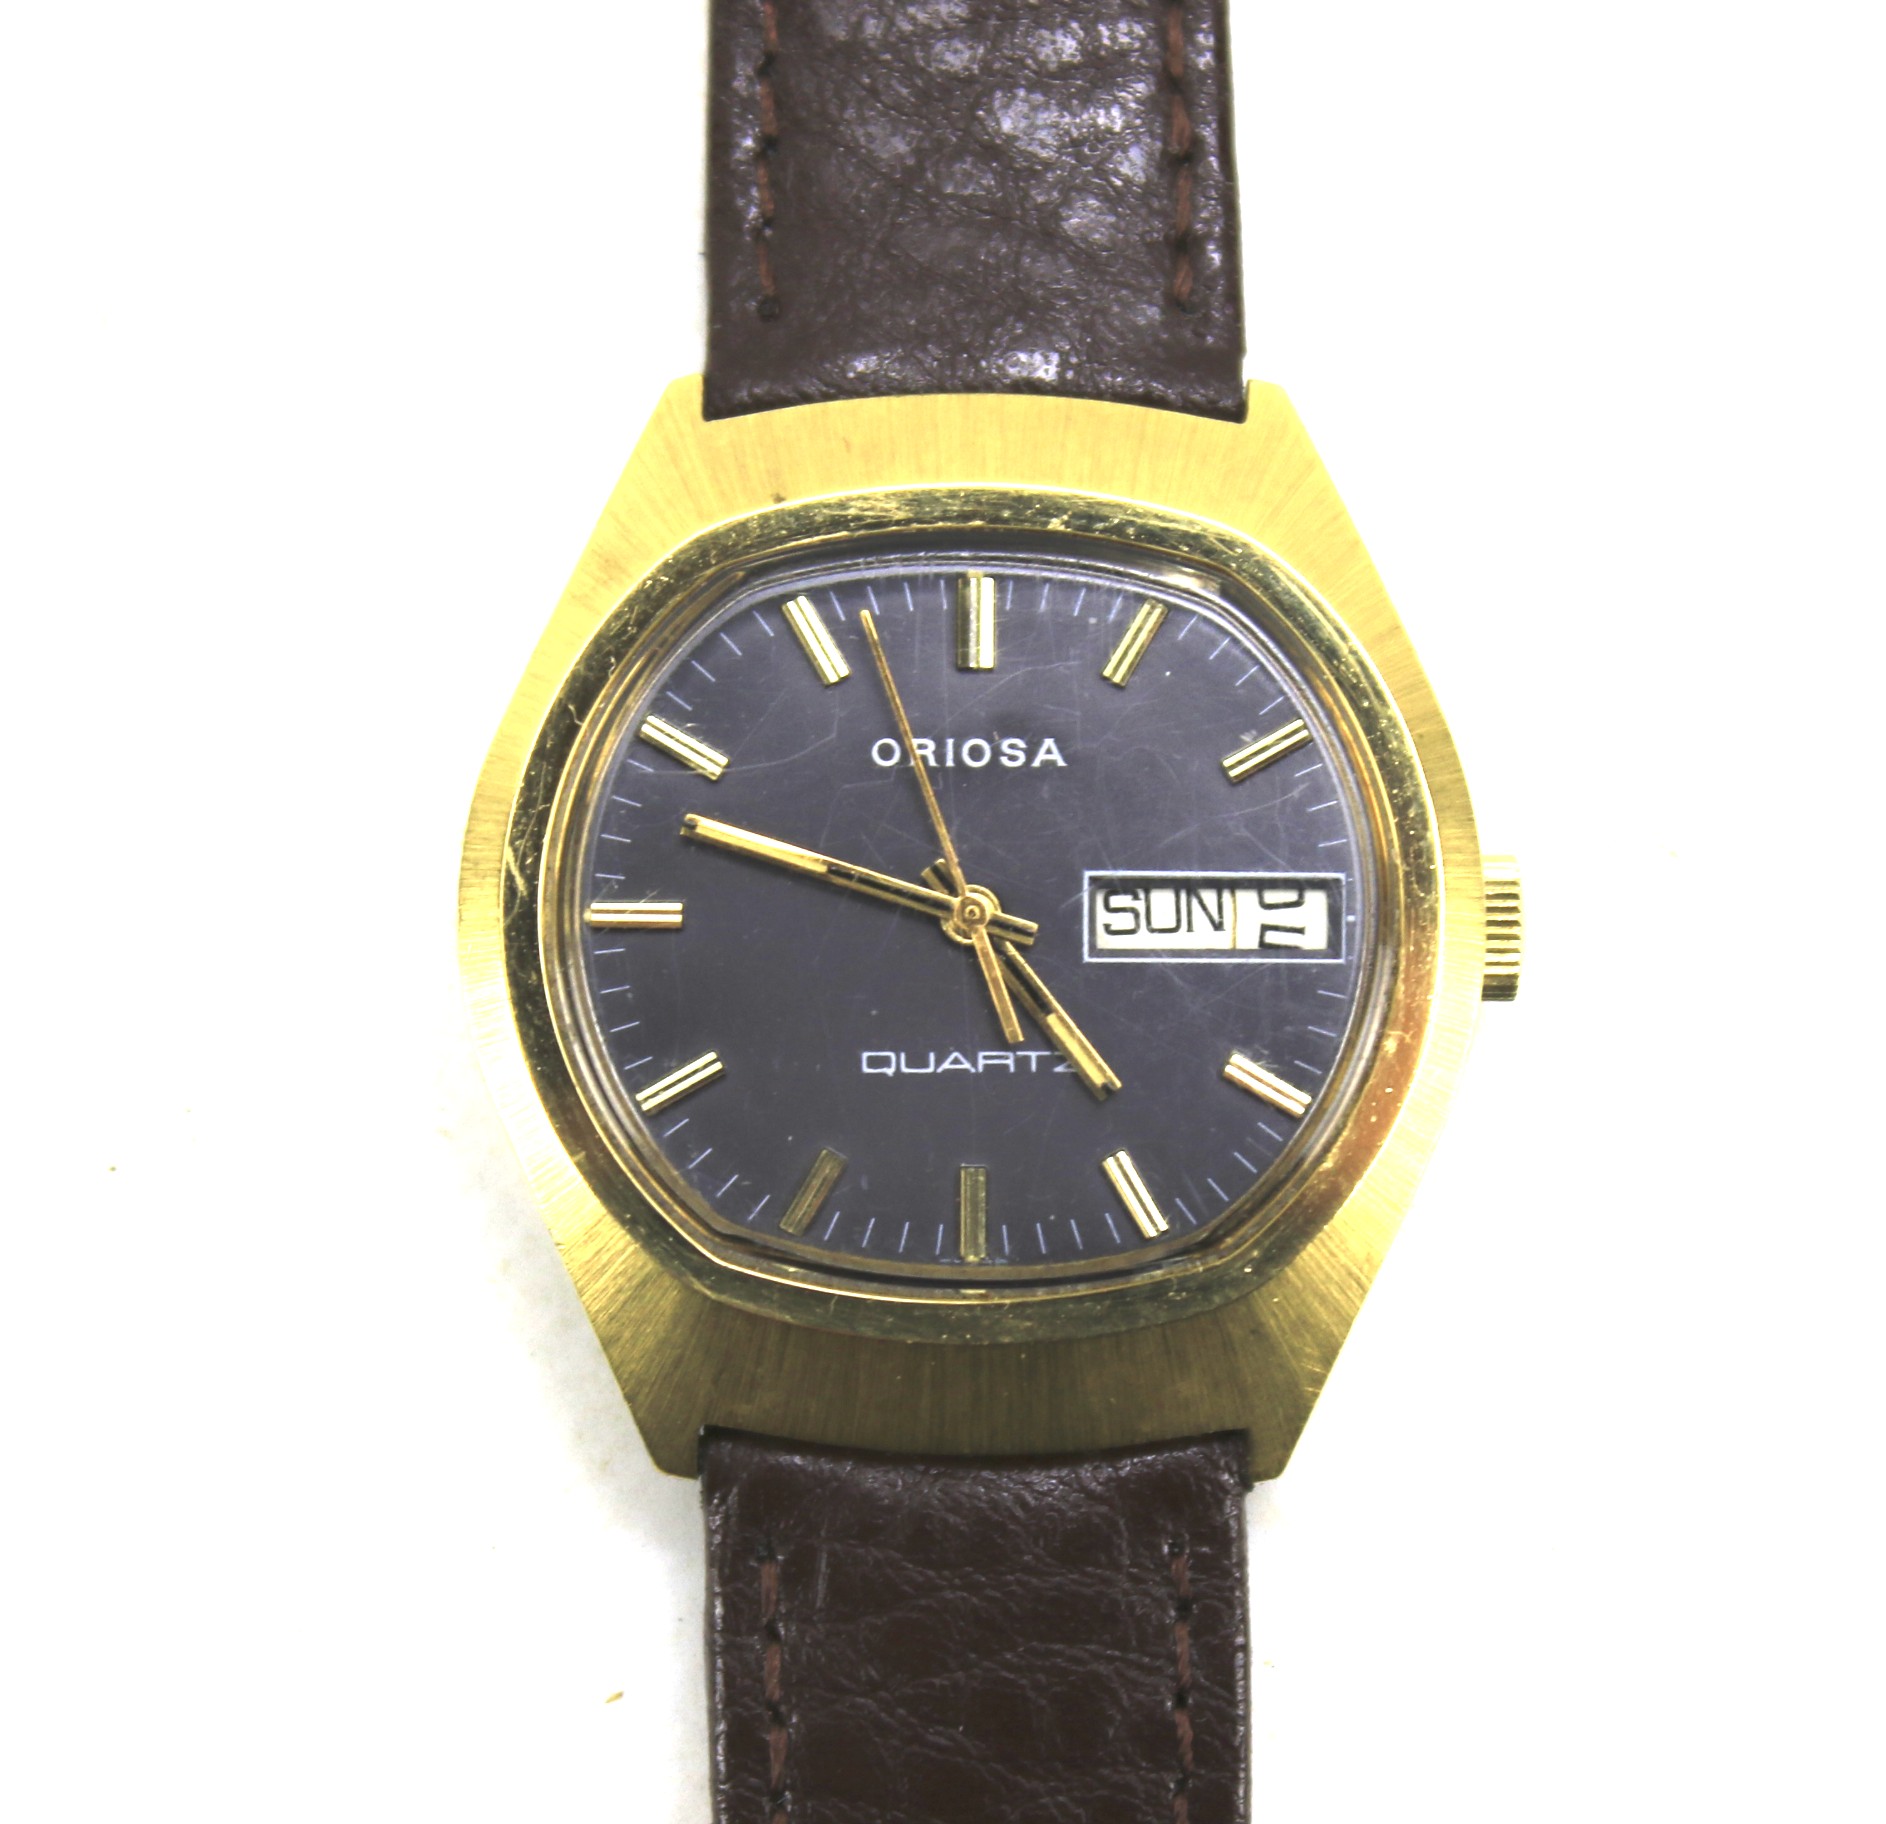 A vintage 1960s Oriosa quartz wristwatch.